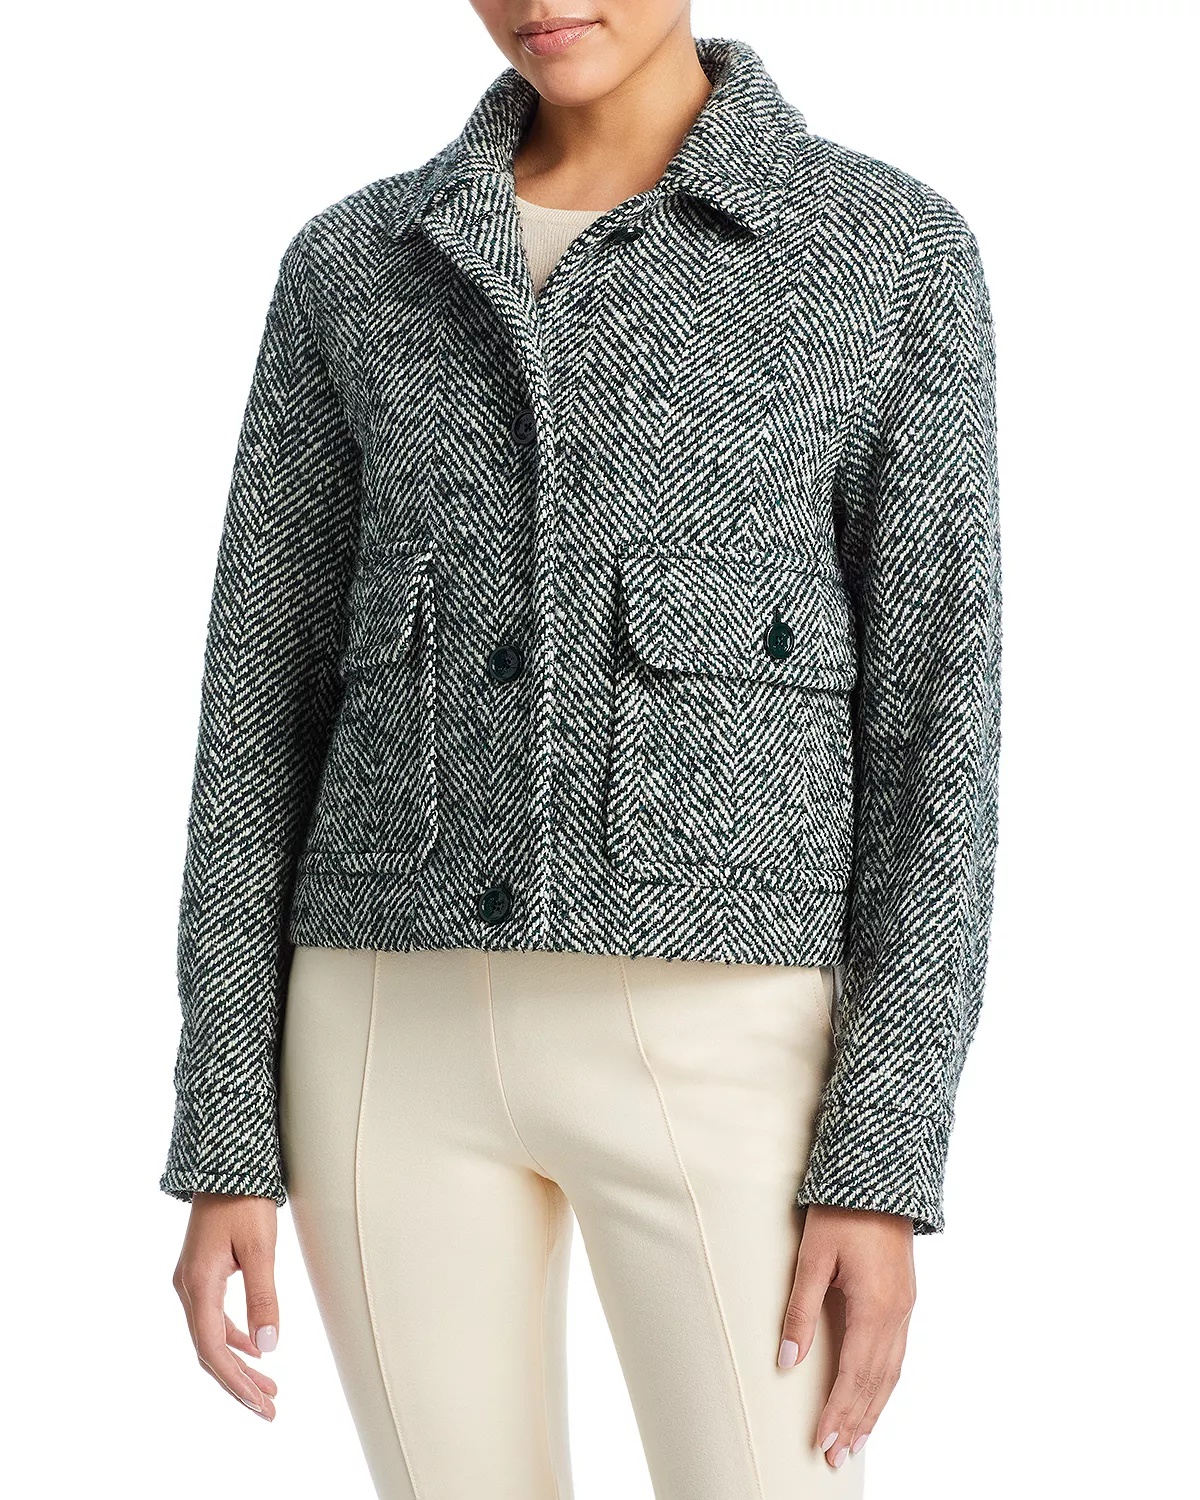 Tweed Jacket - 3